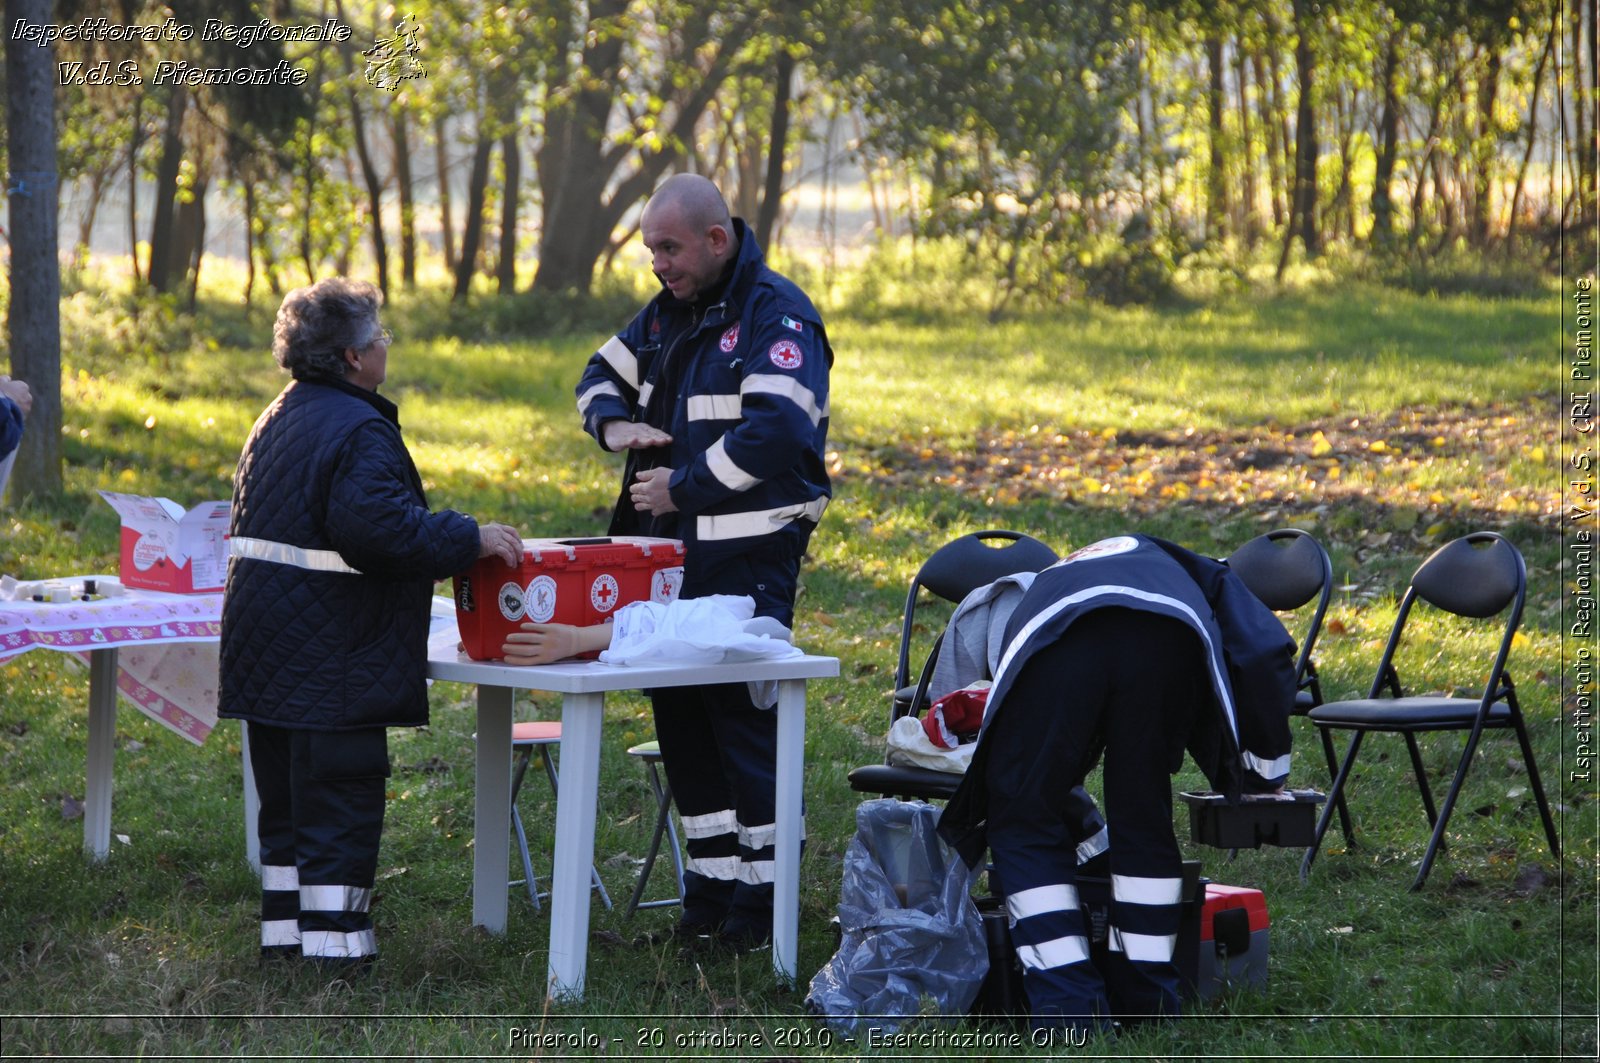 Pinerolo, Baudenasca - 20 ottobre 2010 - Esercitazione ONU -  Croce Rossa Italiana - Ispettorato Regionale Volontari del Soccorso Piemonte